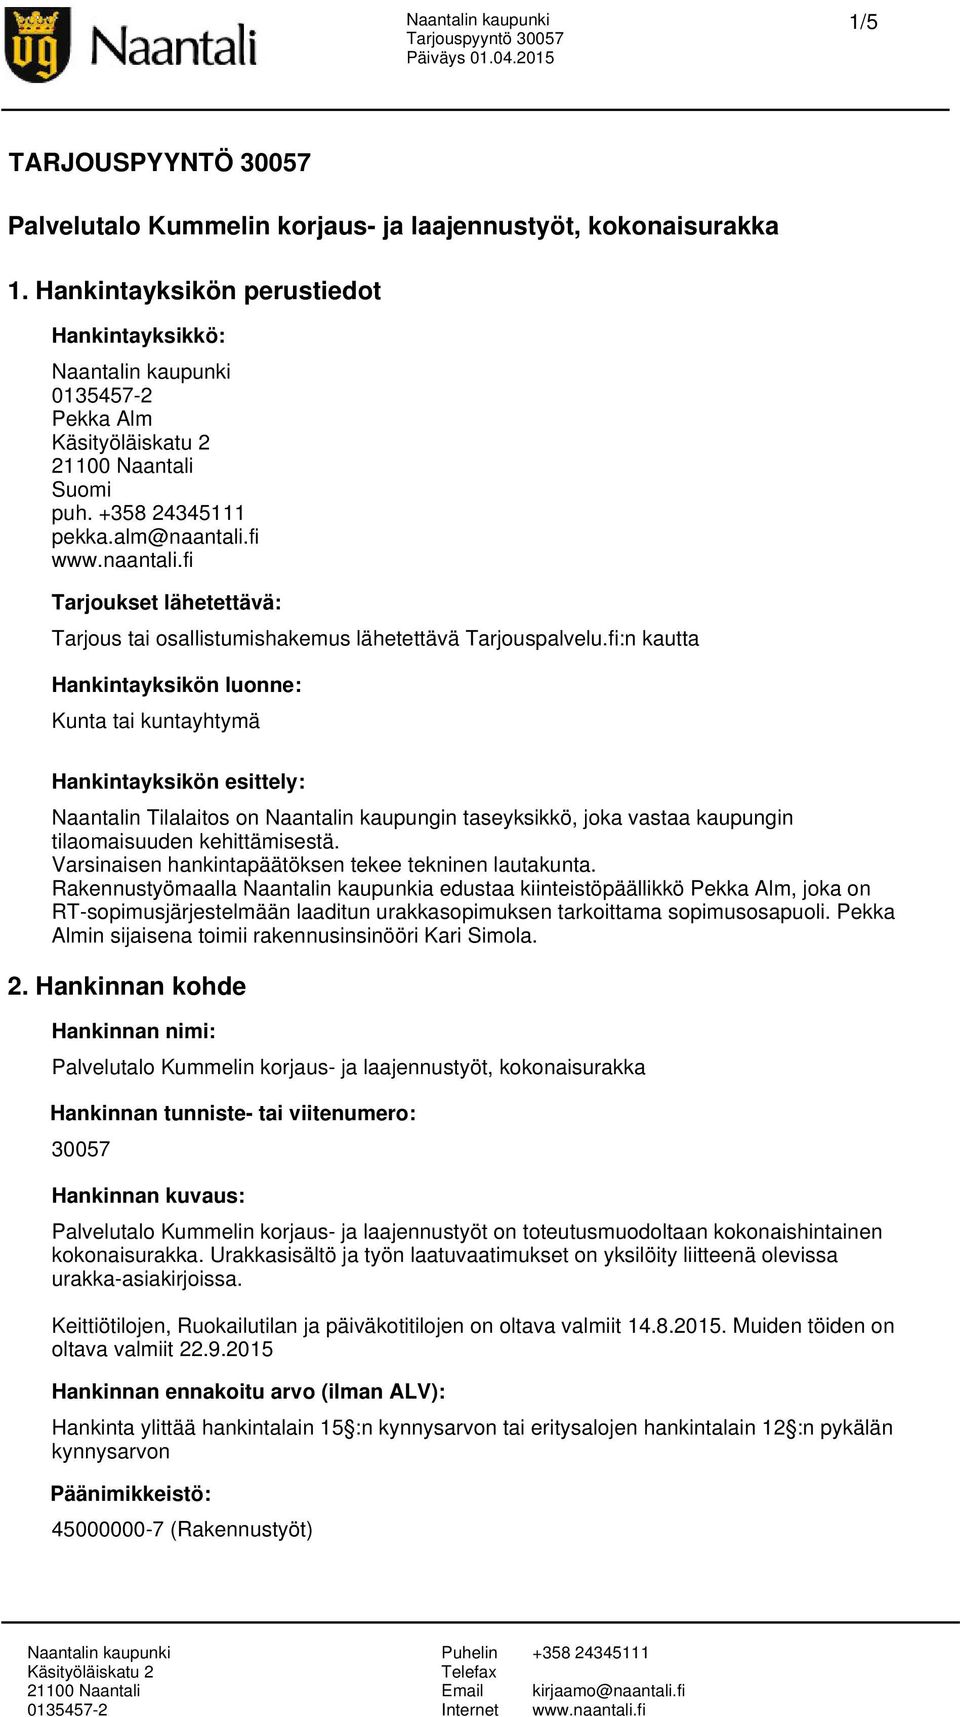 fi:n kautta Hankintayksikön luonne: Kunta tai kuntayhtymä Hankintayksikön esittely: Naantalin Tilalaitos on Naantalin kaupungin taseyksikkö, joka vastaa kaupungin tilaomaisuuden kehittämisestä.